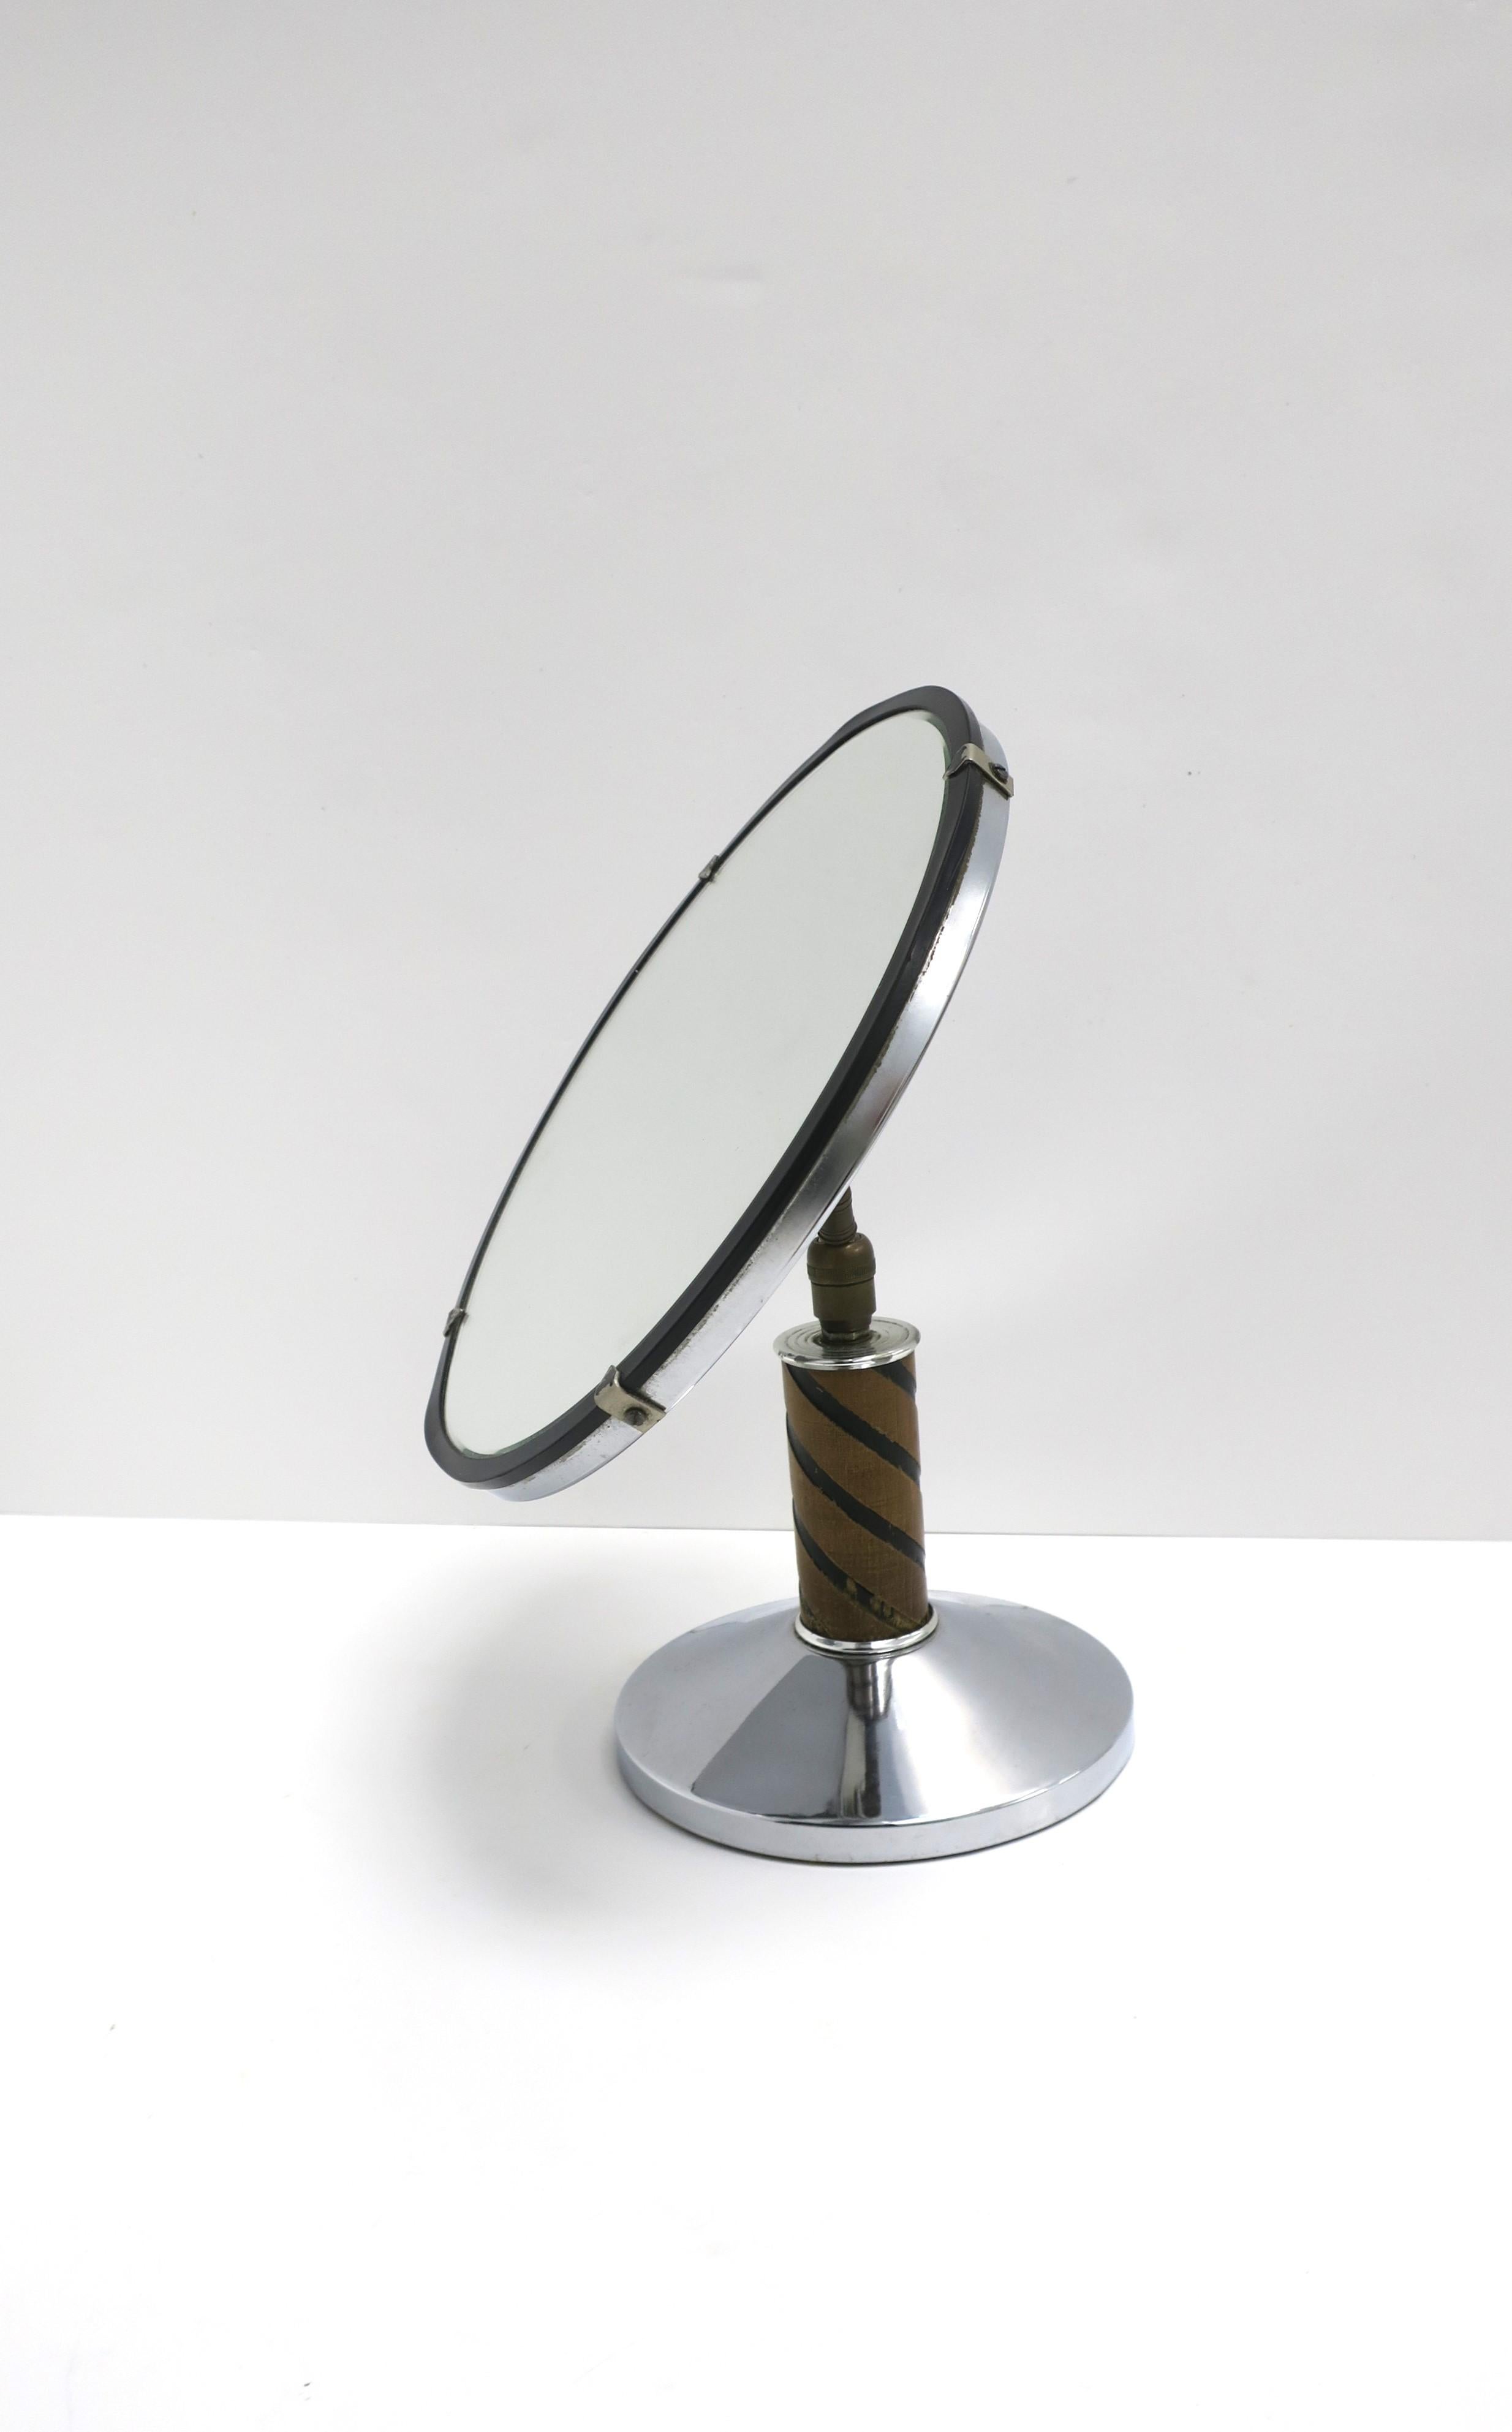 Miroir de courtoisie de table en chrome et bois d'époque Art déco, vers le début du 20e siècle. La pièce est composée d'une base et d'un cadre en bois et en métal chromé, d'un miroir rond et d'une quincaillerie en bronze à l'arrière. Le miroir est